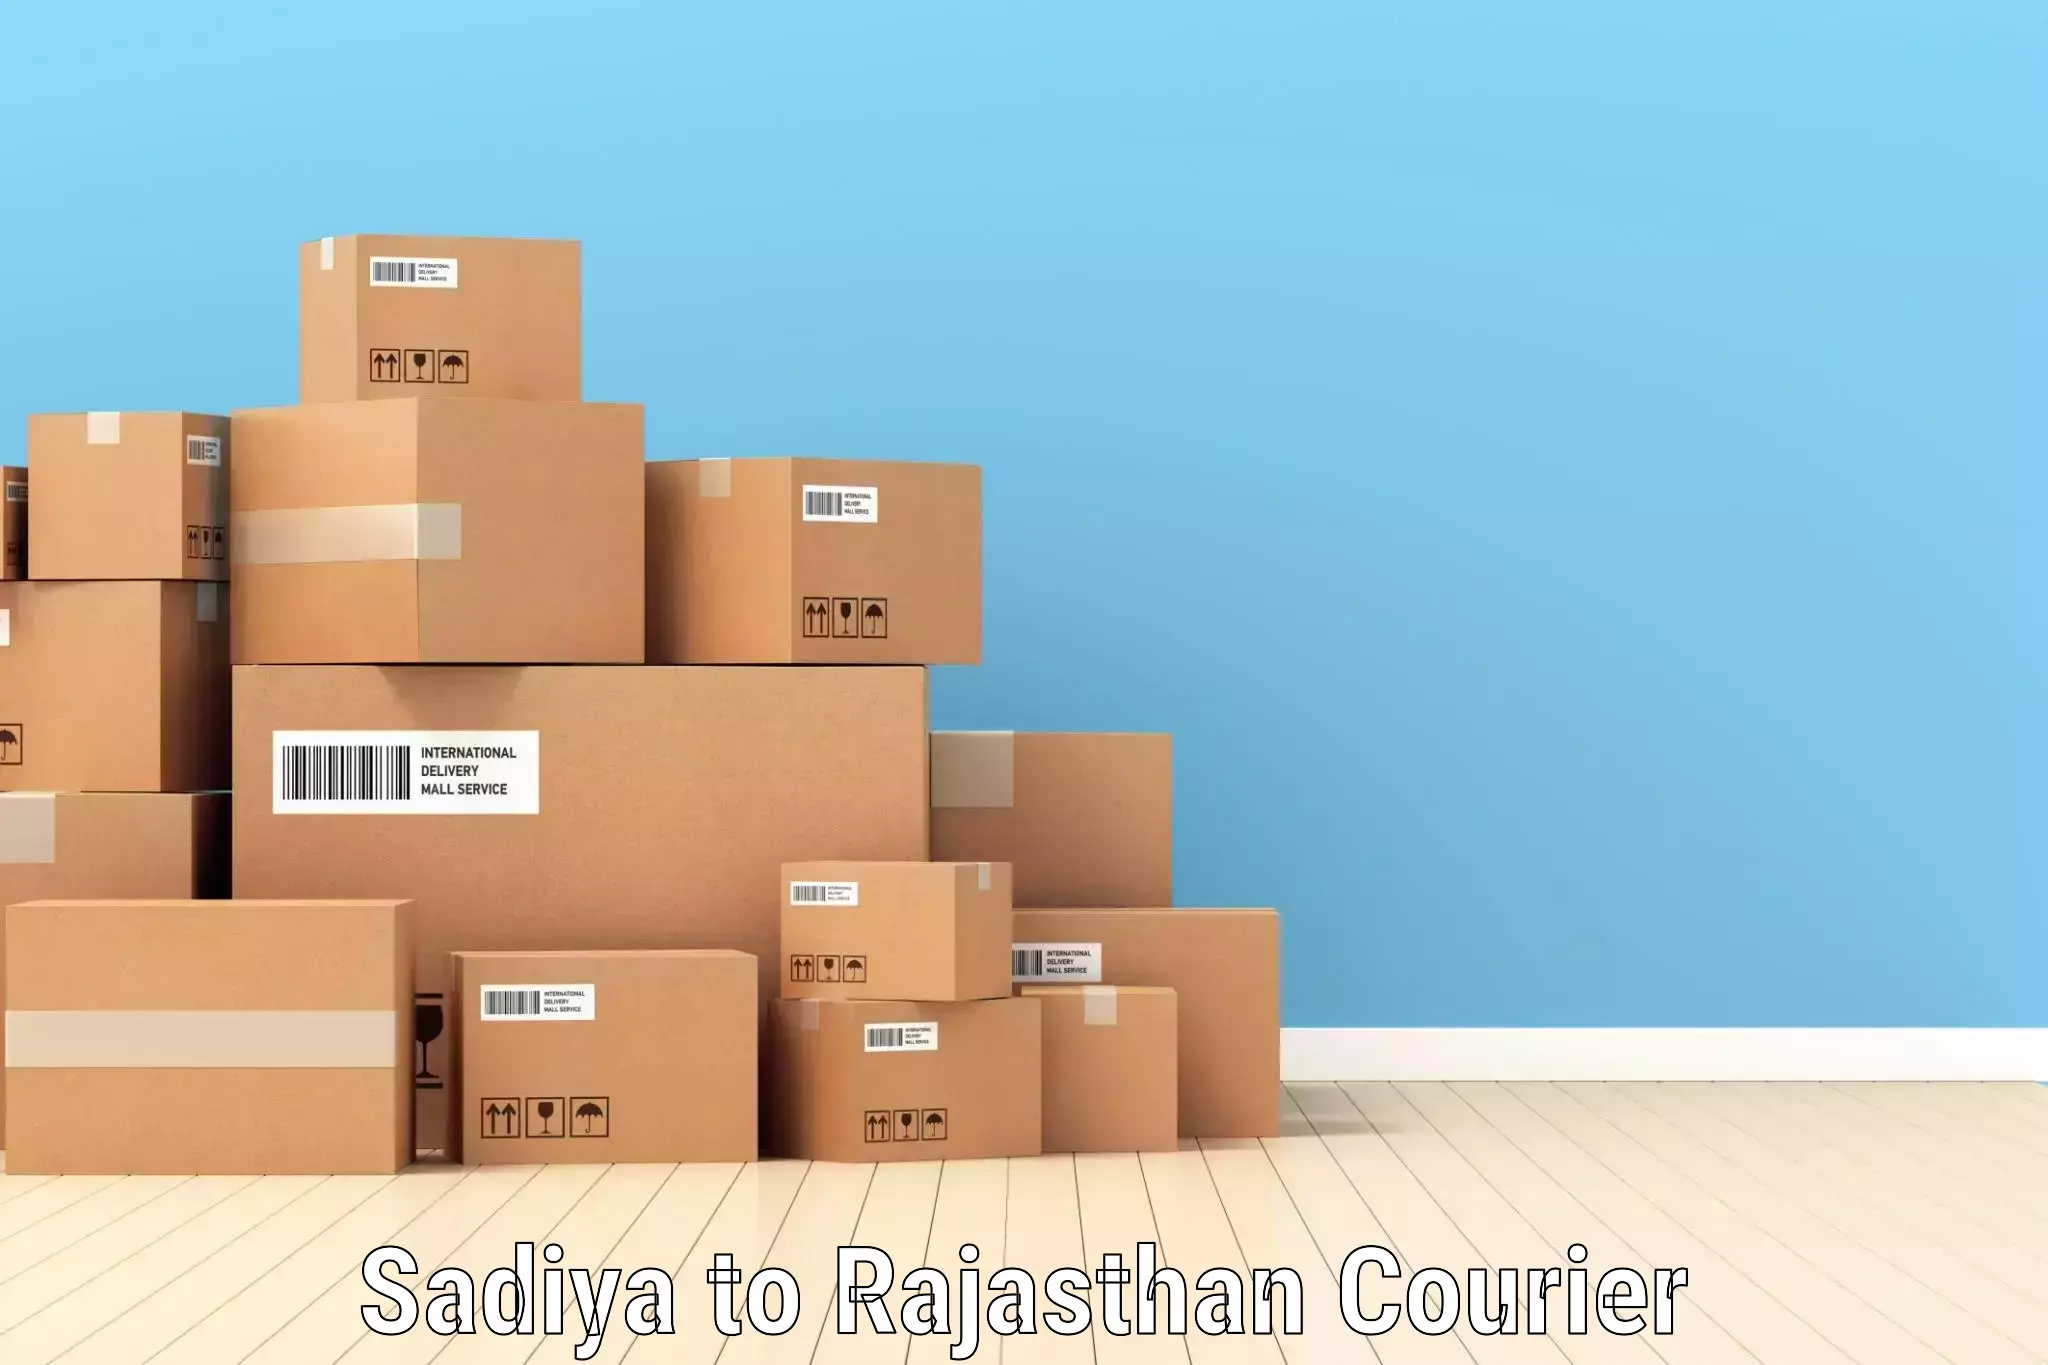 Express courier facilities Sadiya to Sri Vijaynagar